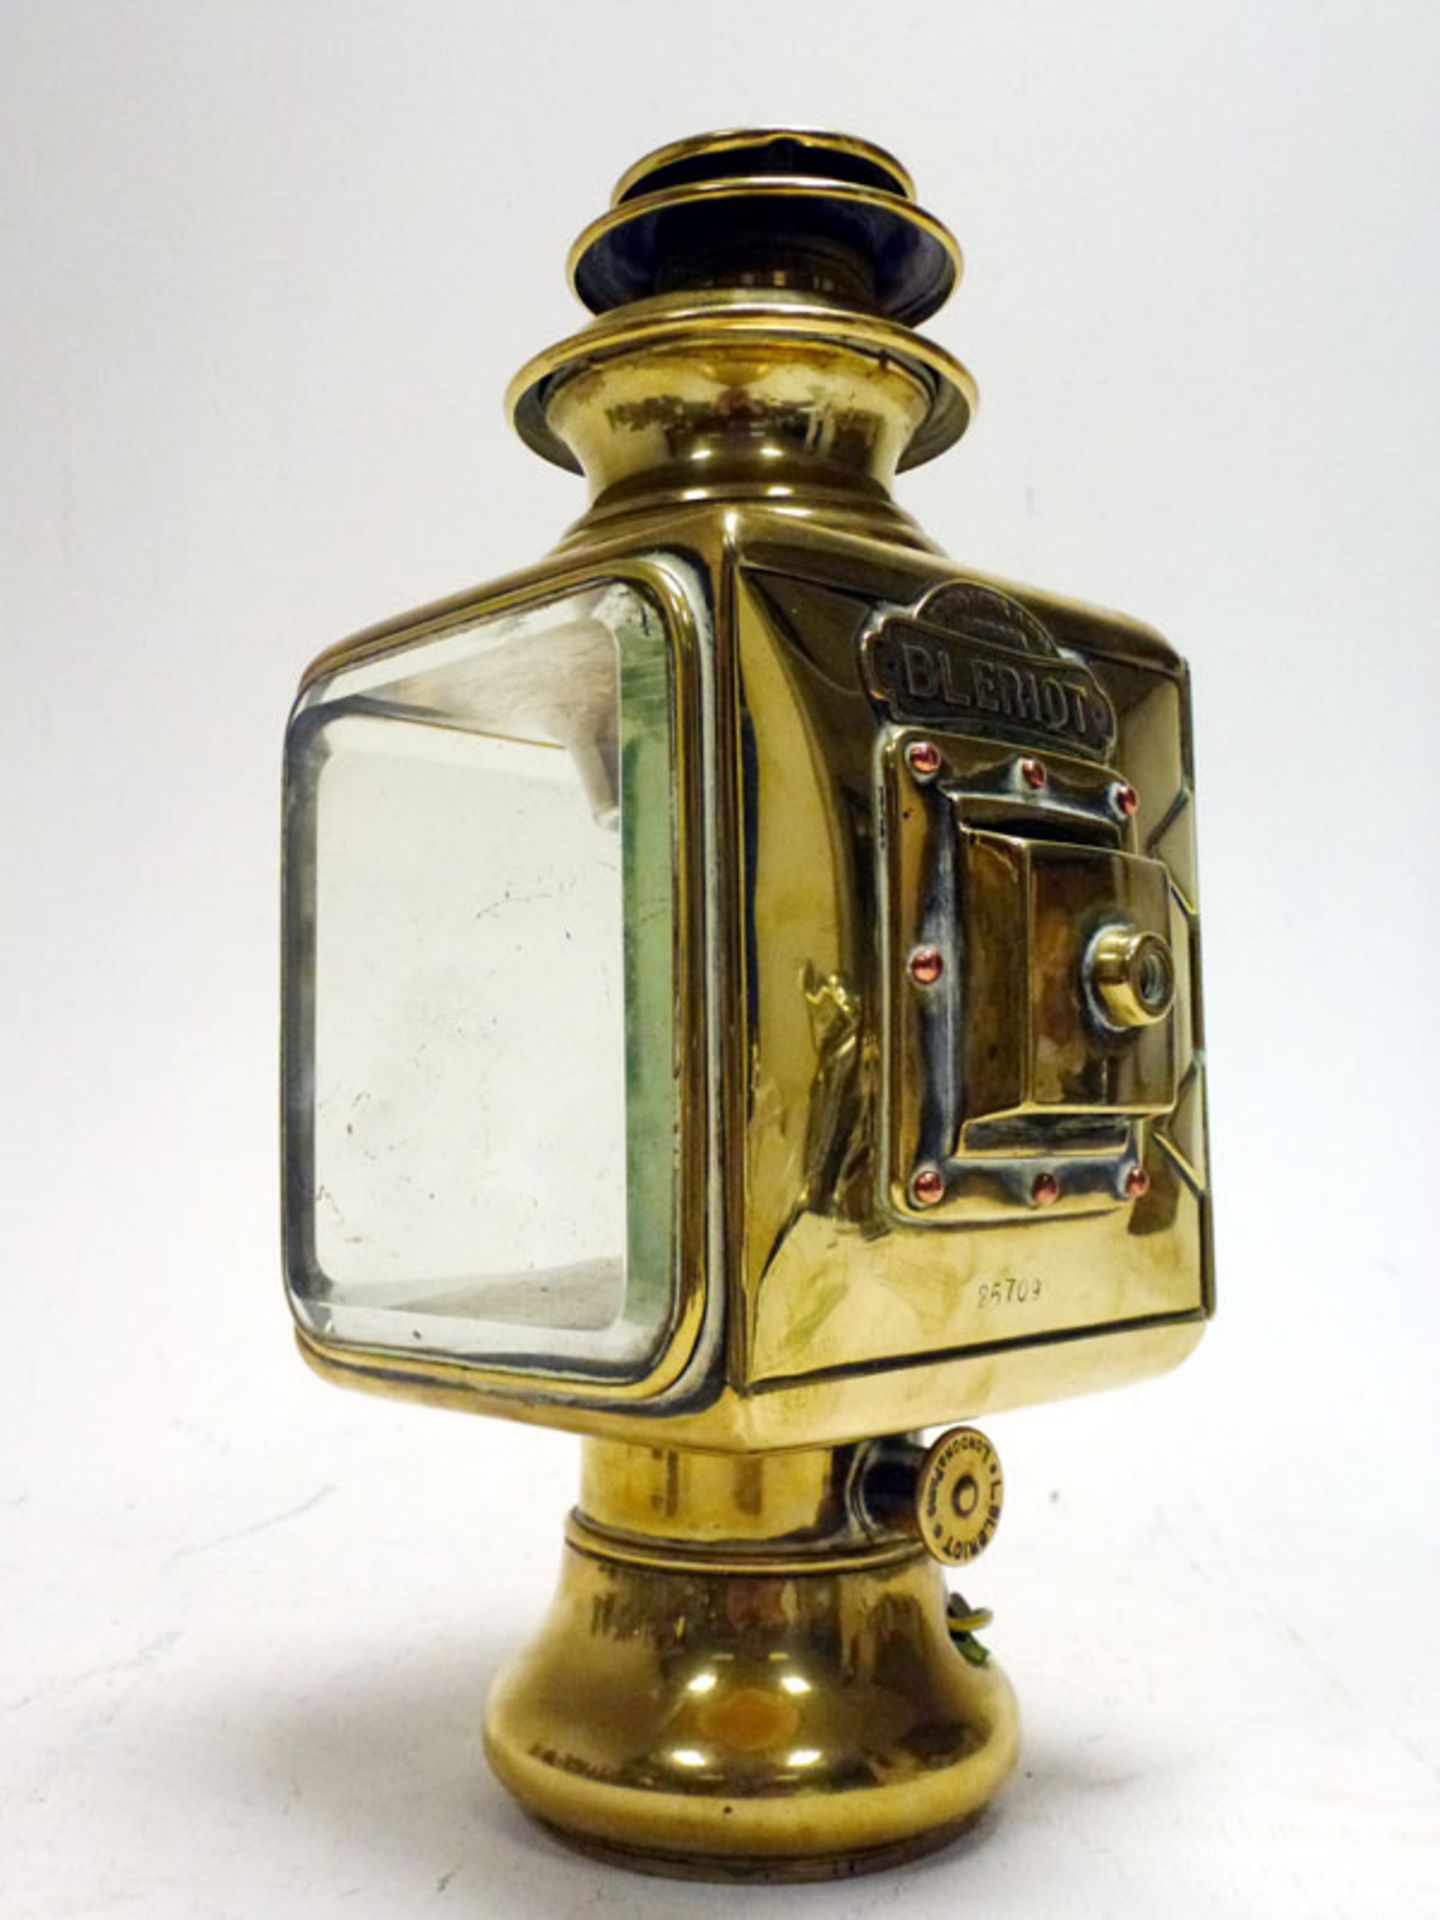 A Bleriot Sidelamp